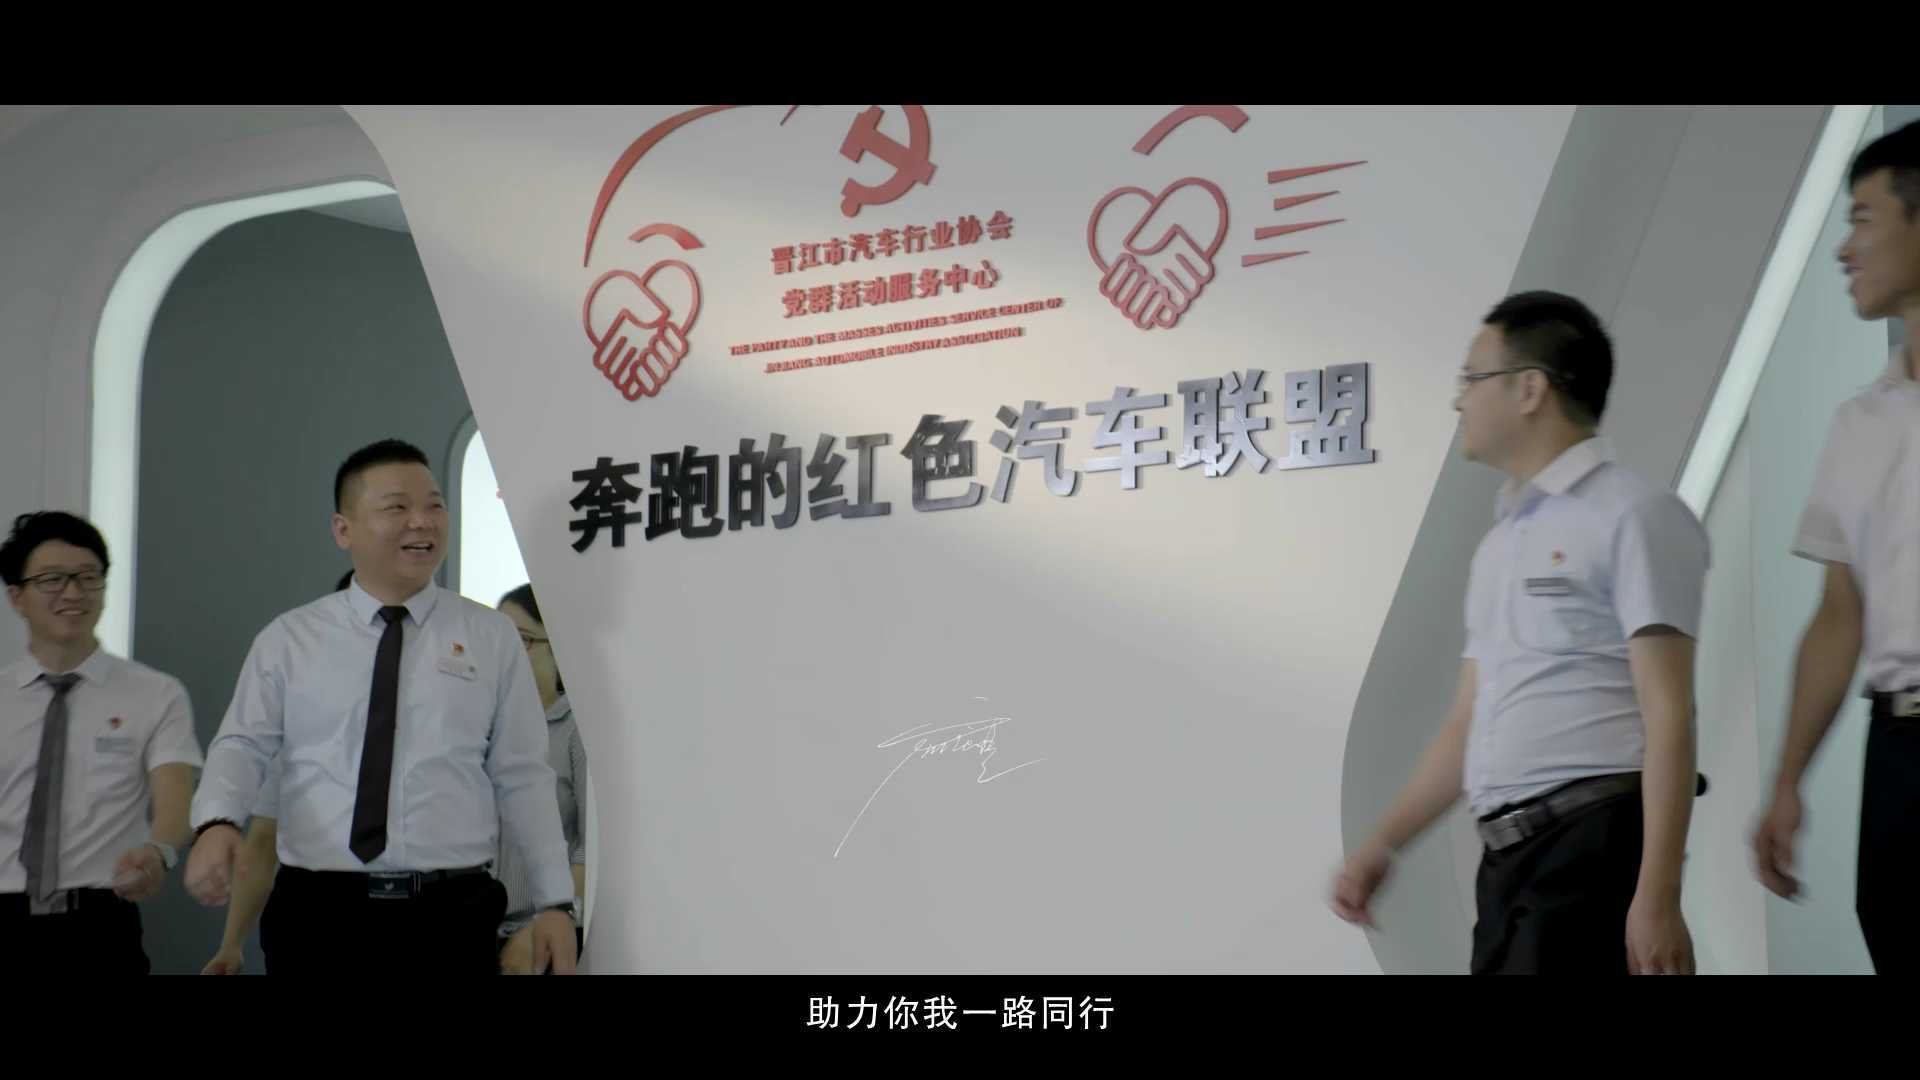 《一路同行》#奔跑的红色汽车联盟#晋江汽车行业协会